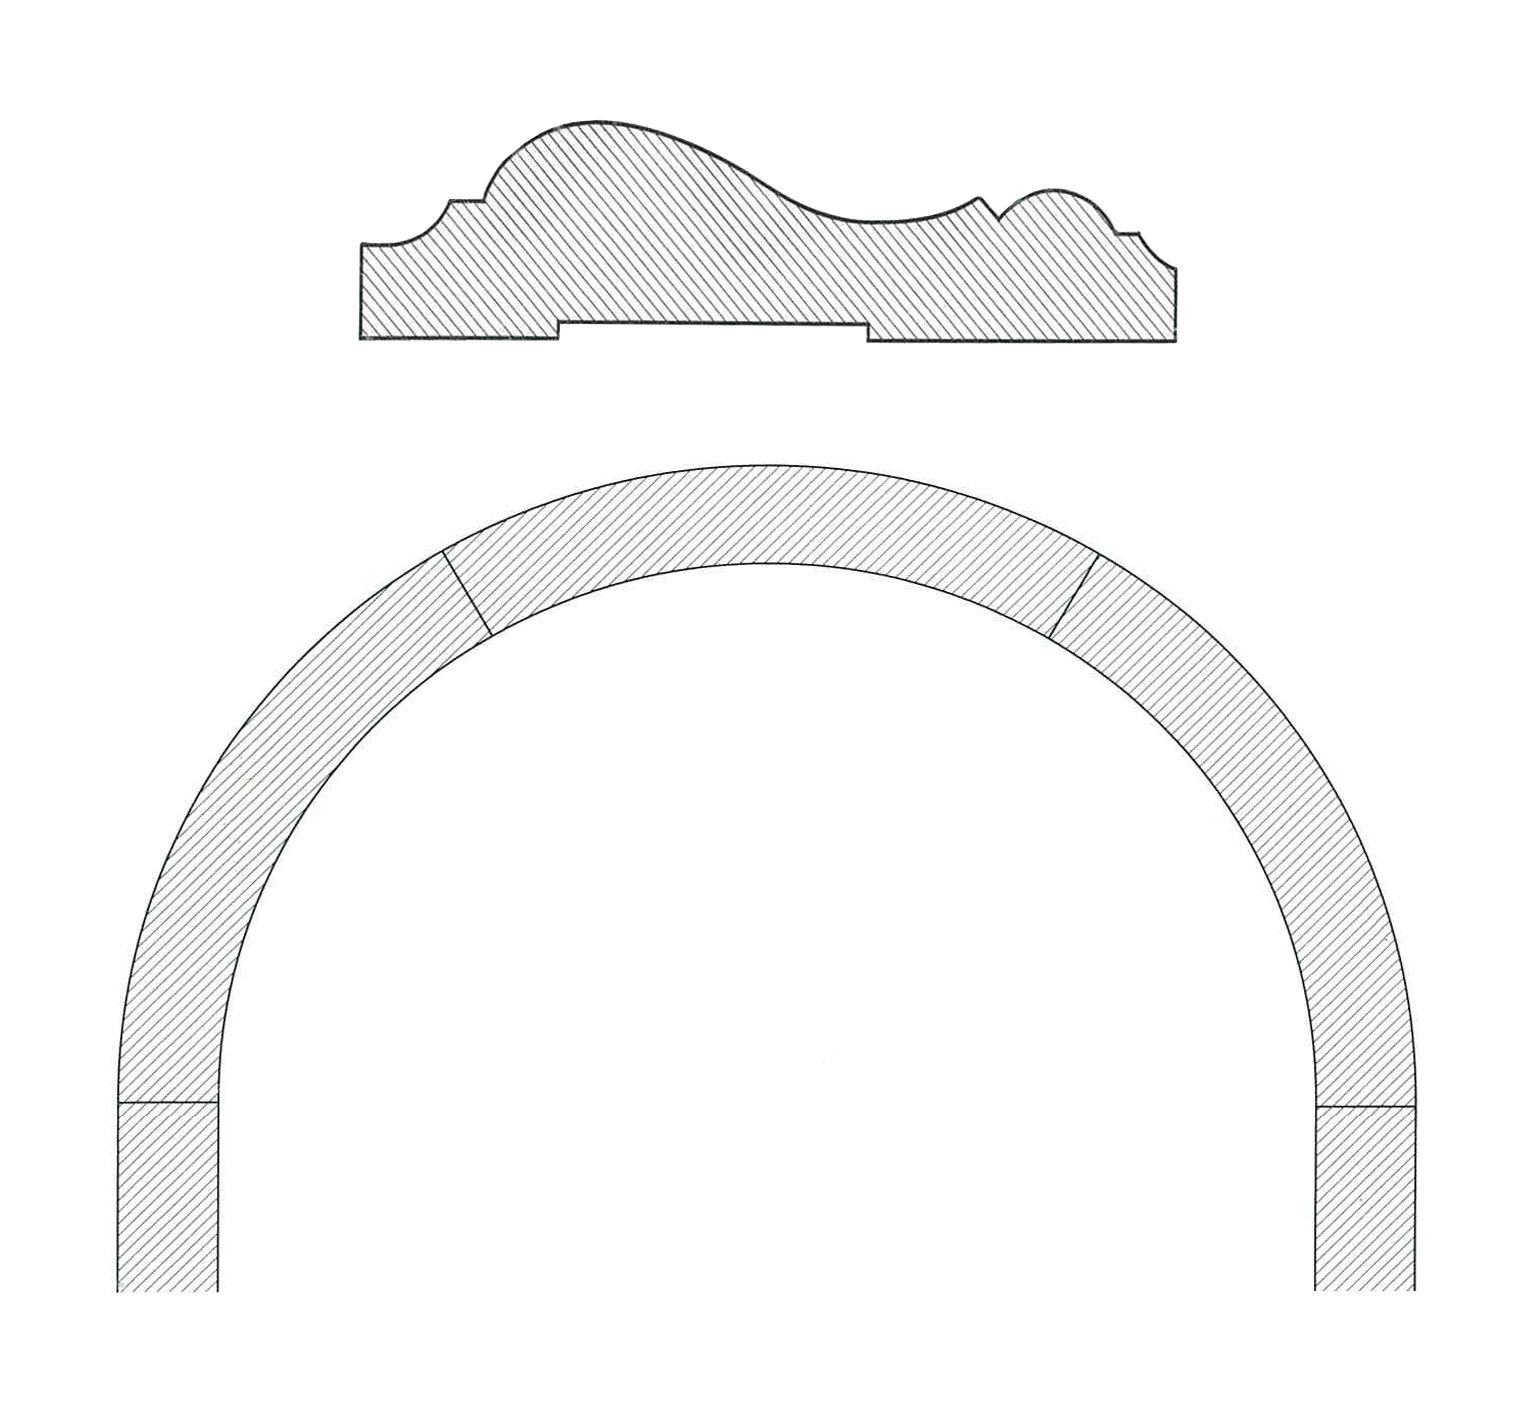 Coprifilo arco sagomato massello d.1000 est. bahia